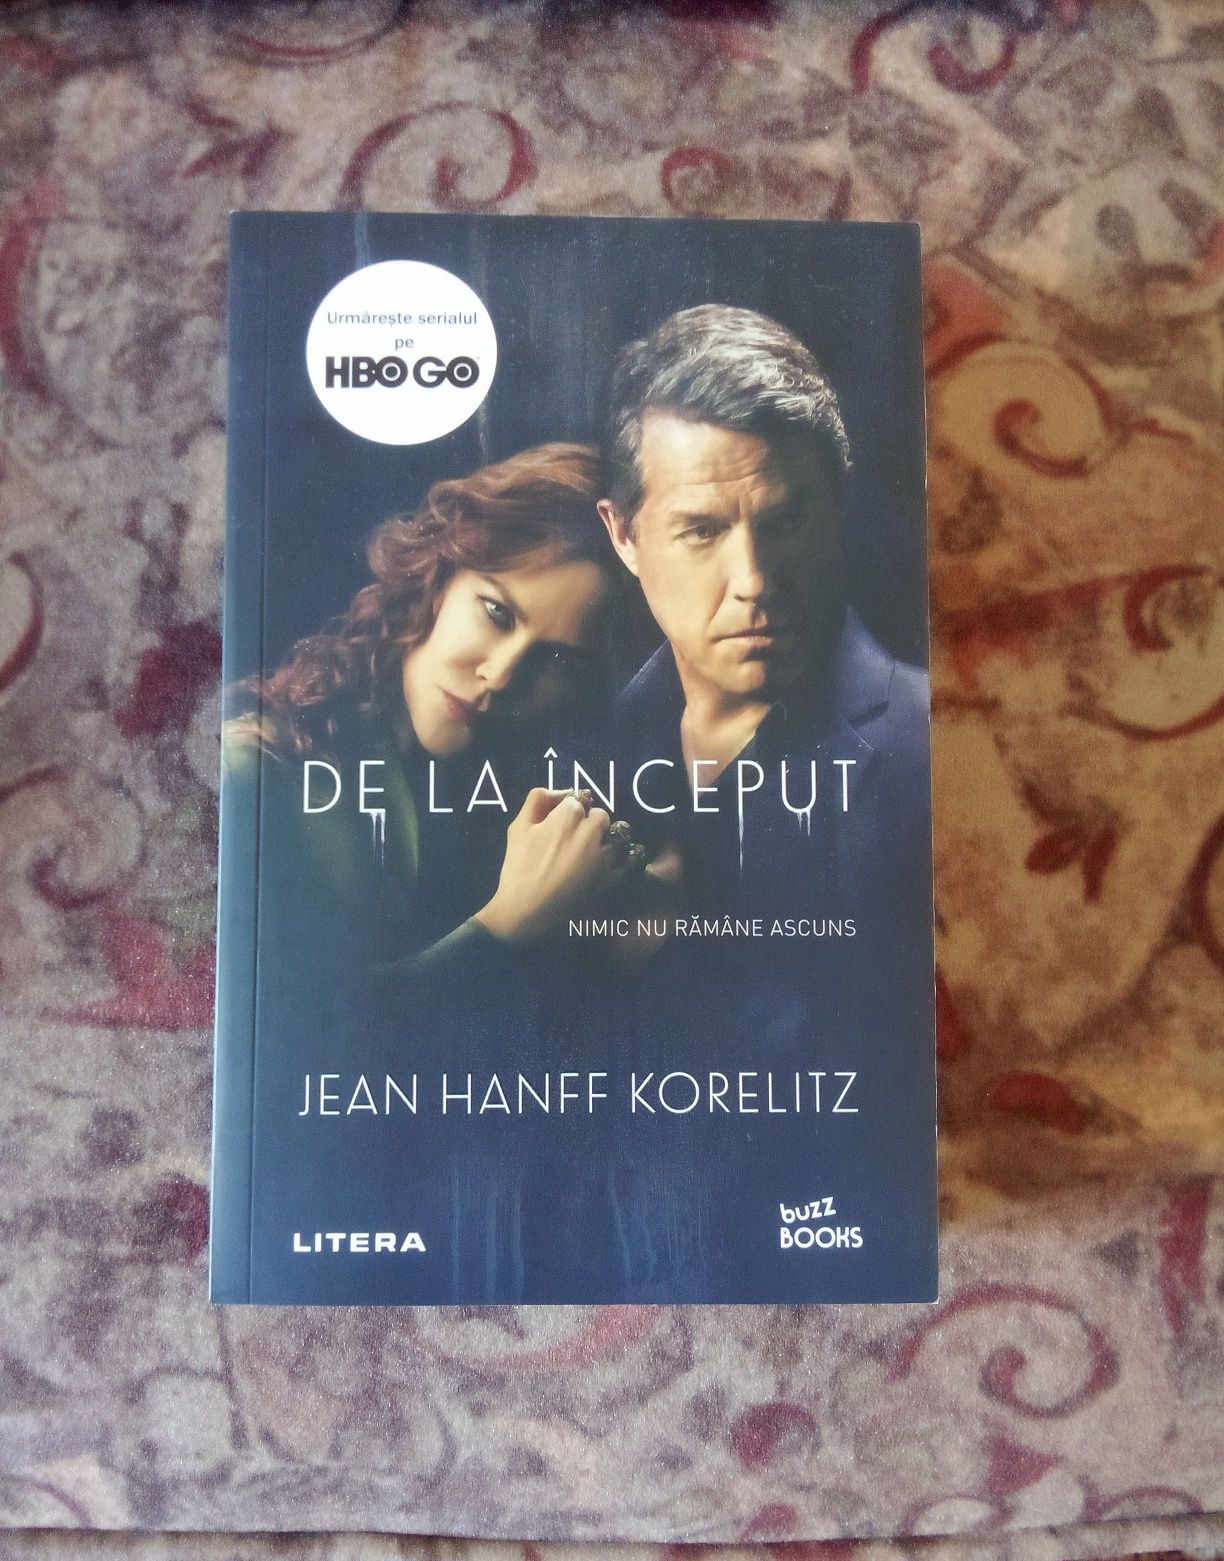 Roman "De la inceput" de Jean Hanff Korelitz